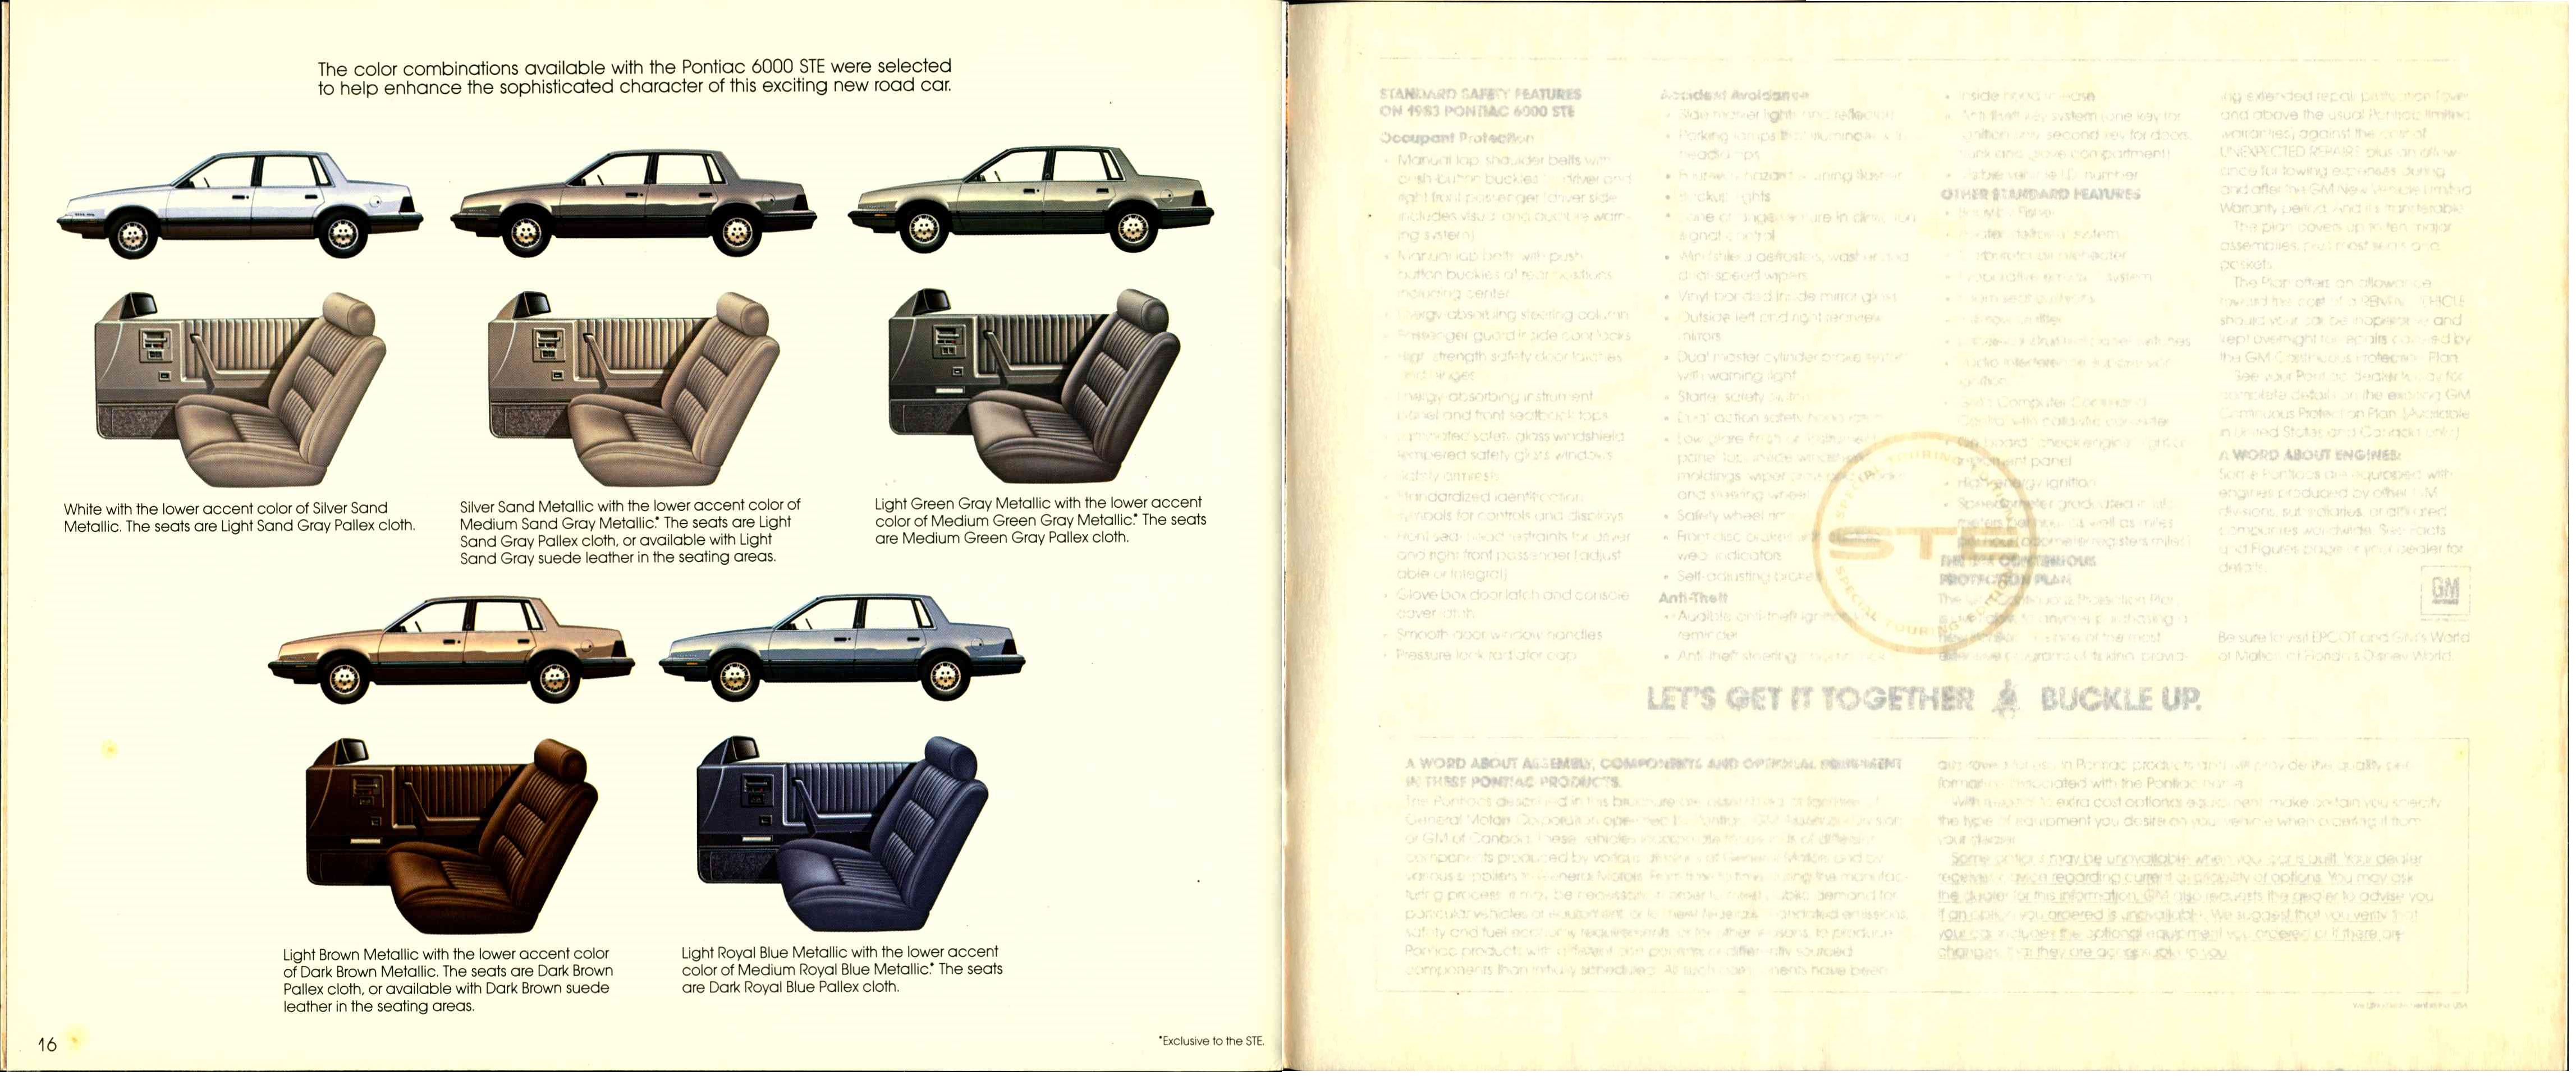 1983 Pontiac 6000 STE 16-17a